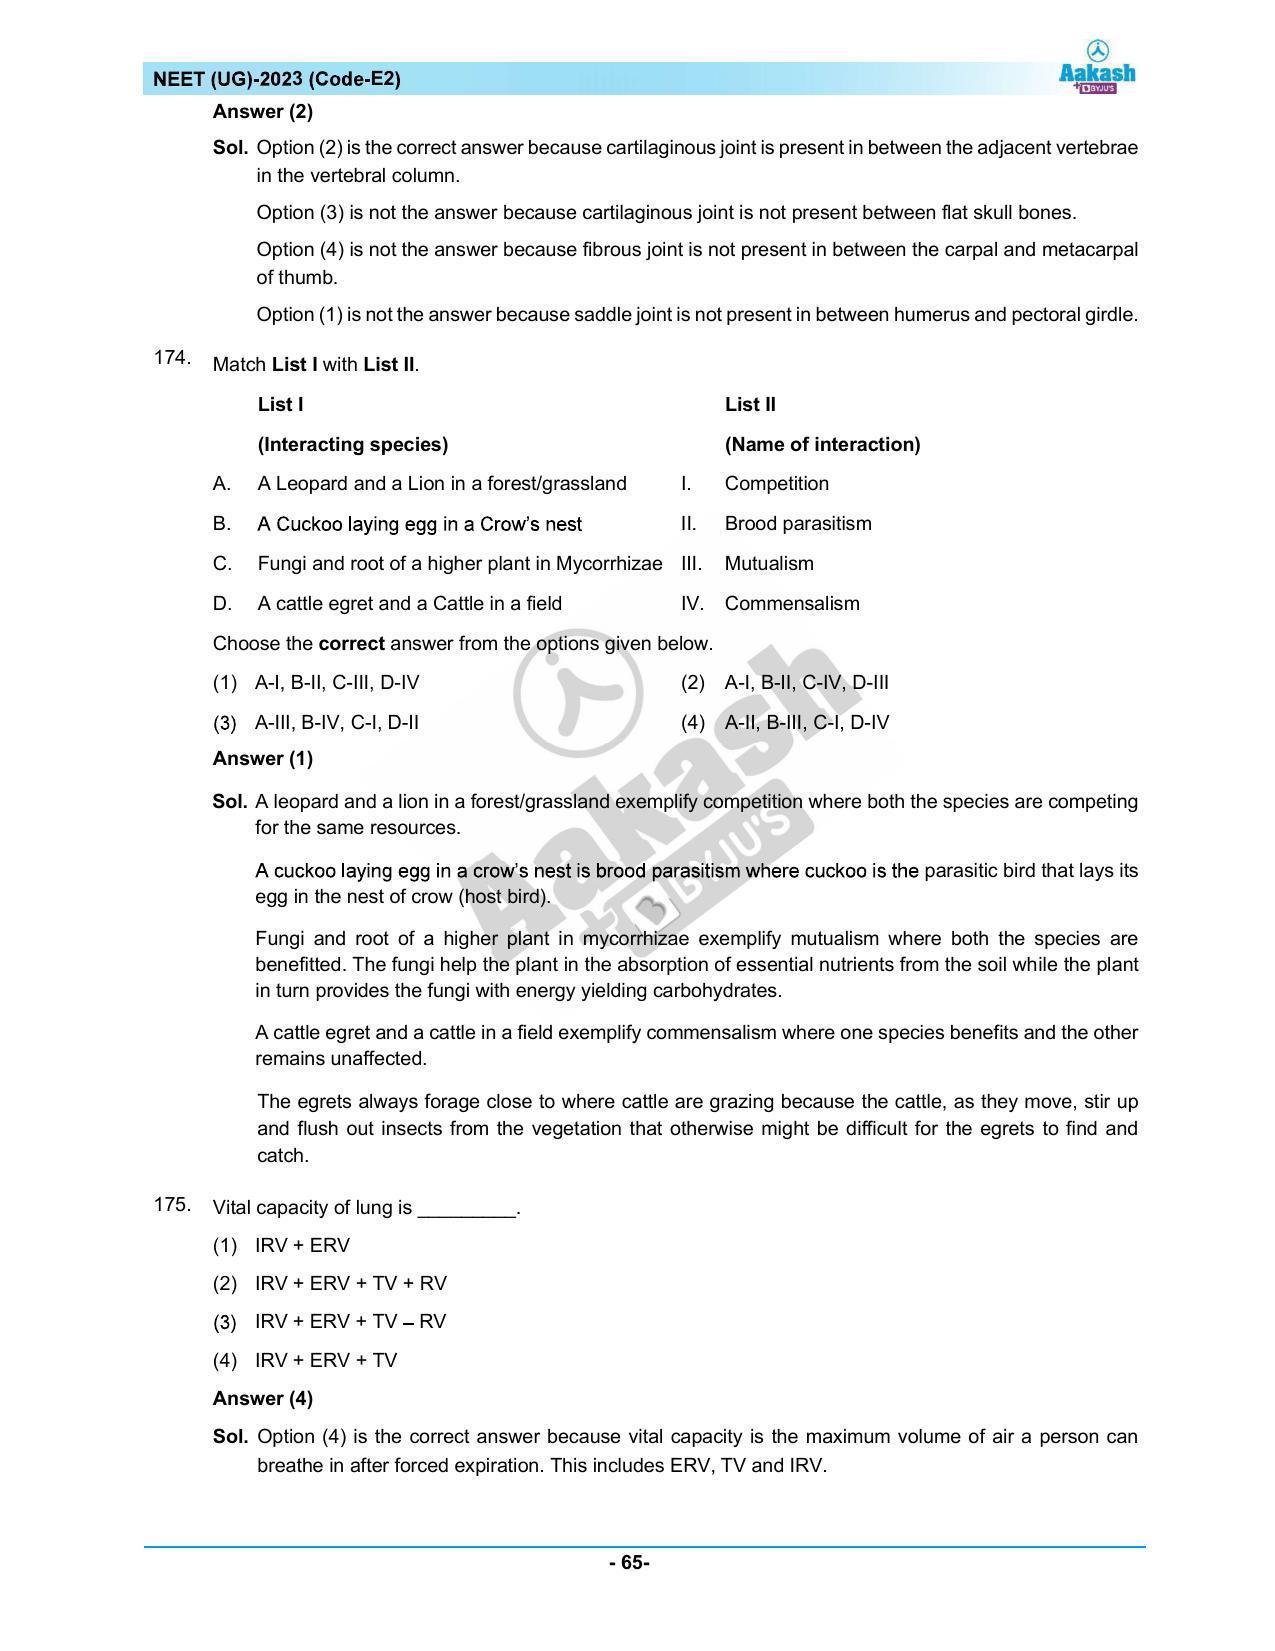 NEET 2023 Question Paper E2 - Page 65